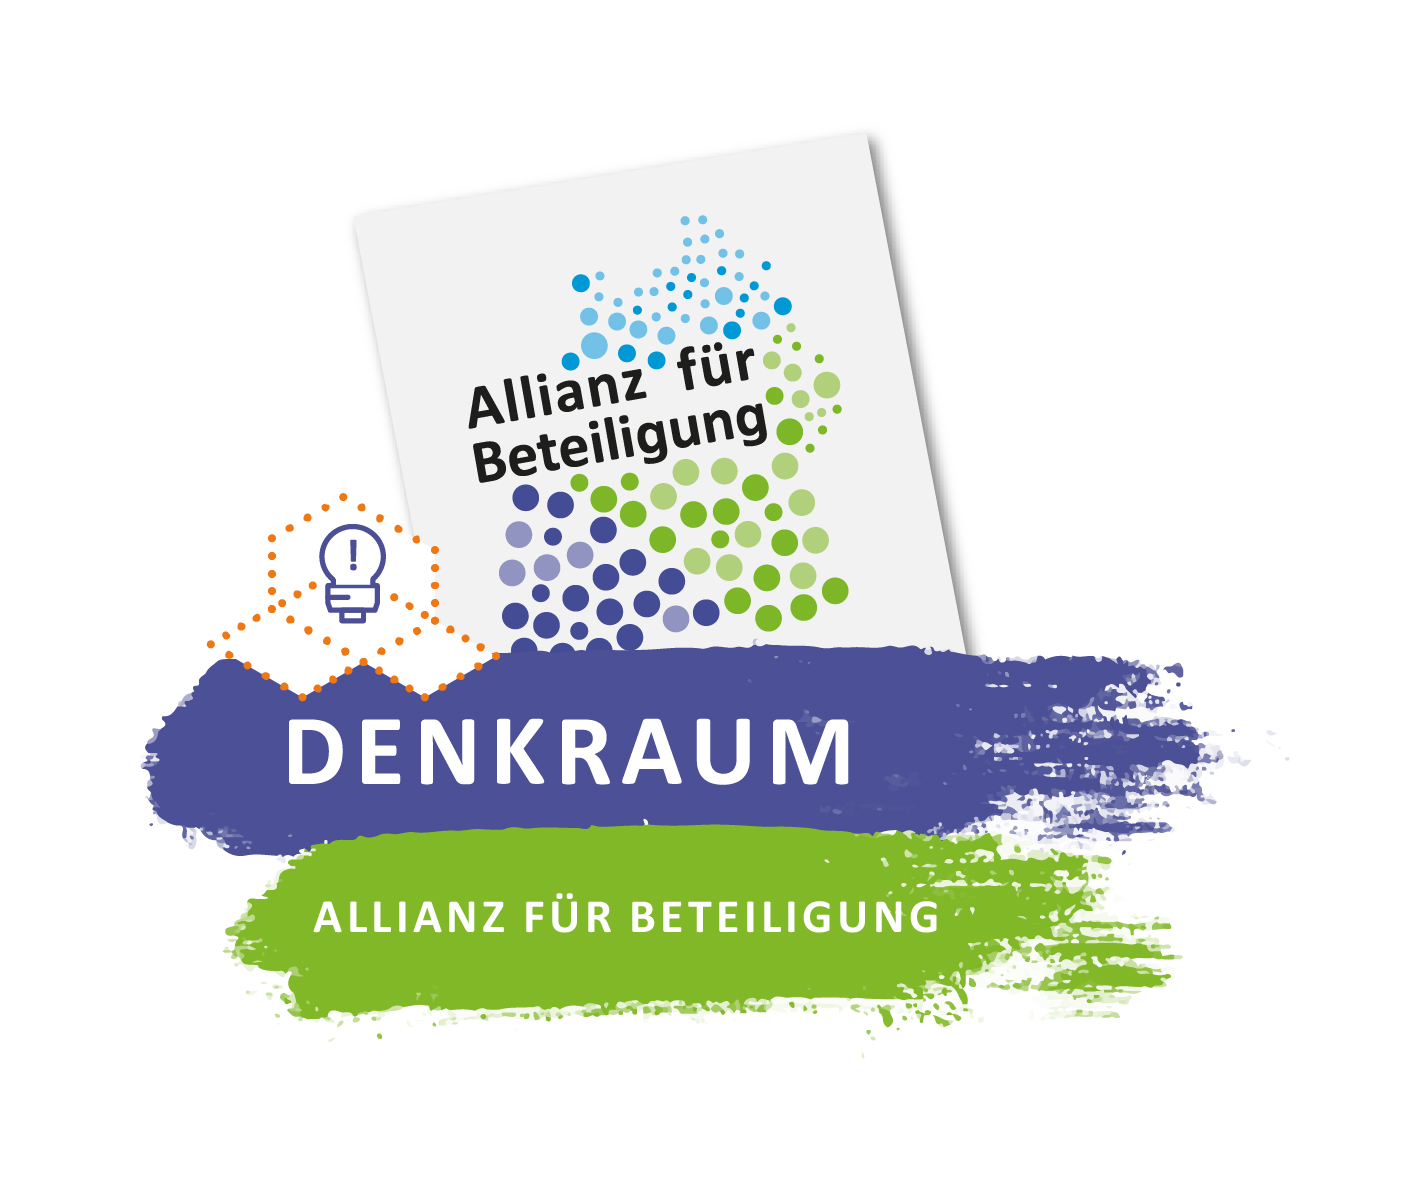 Zu sehen ist das Logo des "Denkraum" der Allianz für Beteiligung